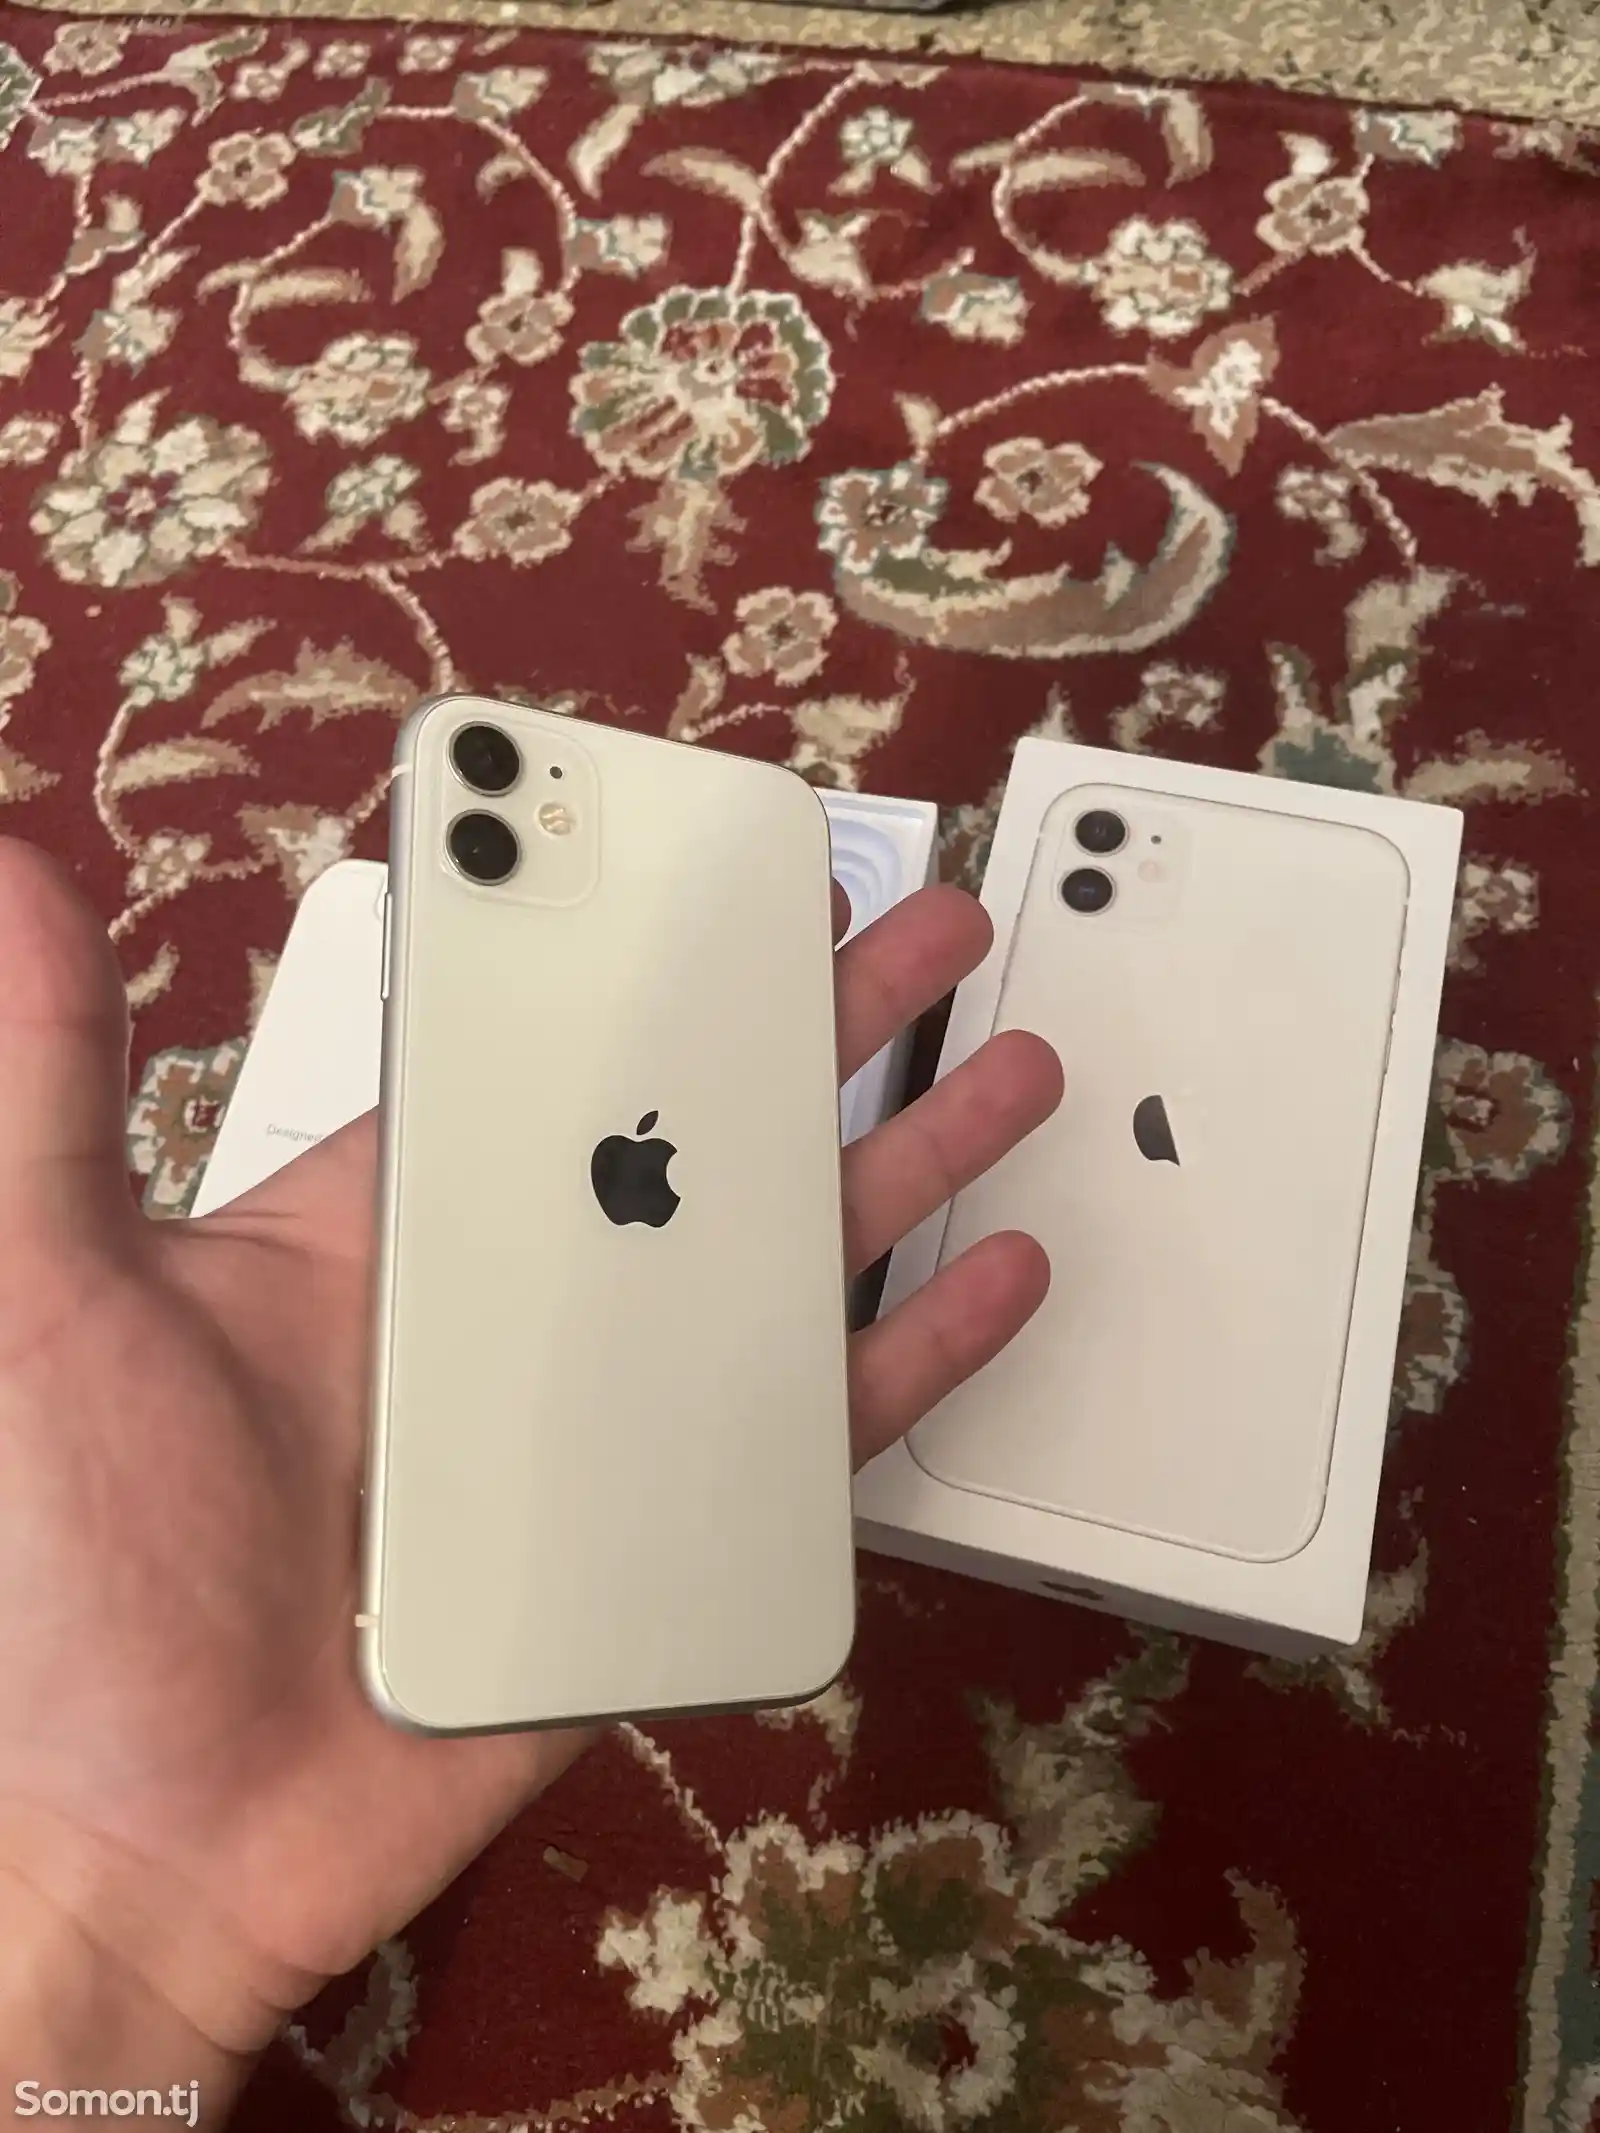 Apple iPhone 11, 64 gb, Green-2